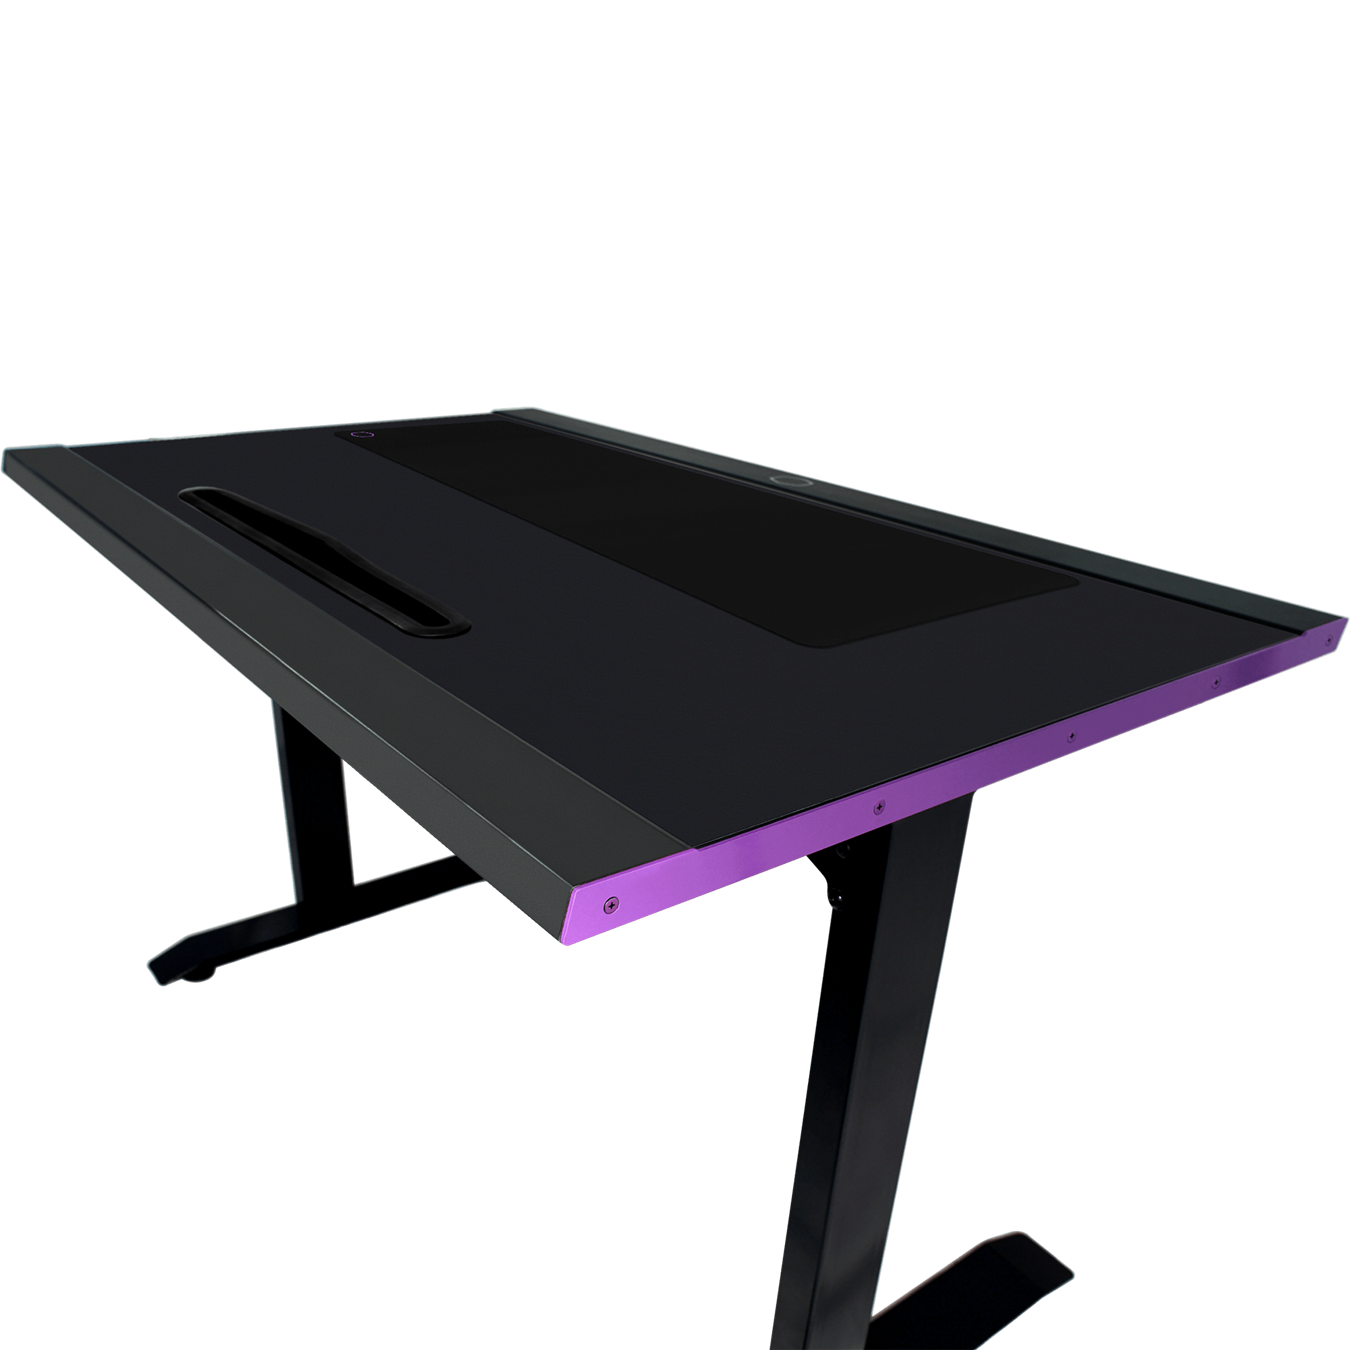 GD120 ARGB Gaming Desk - Close up shot at a 45 degree angle